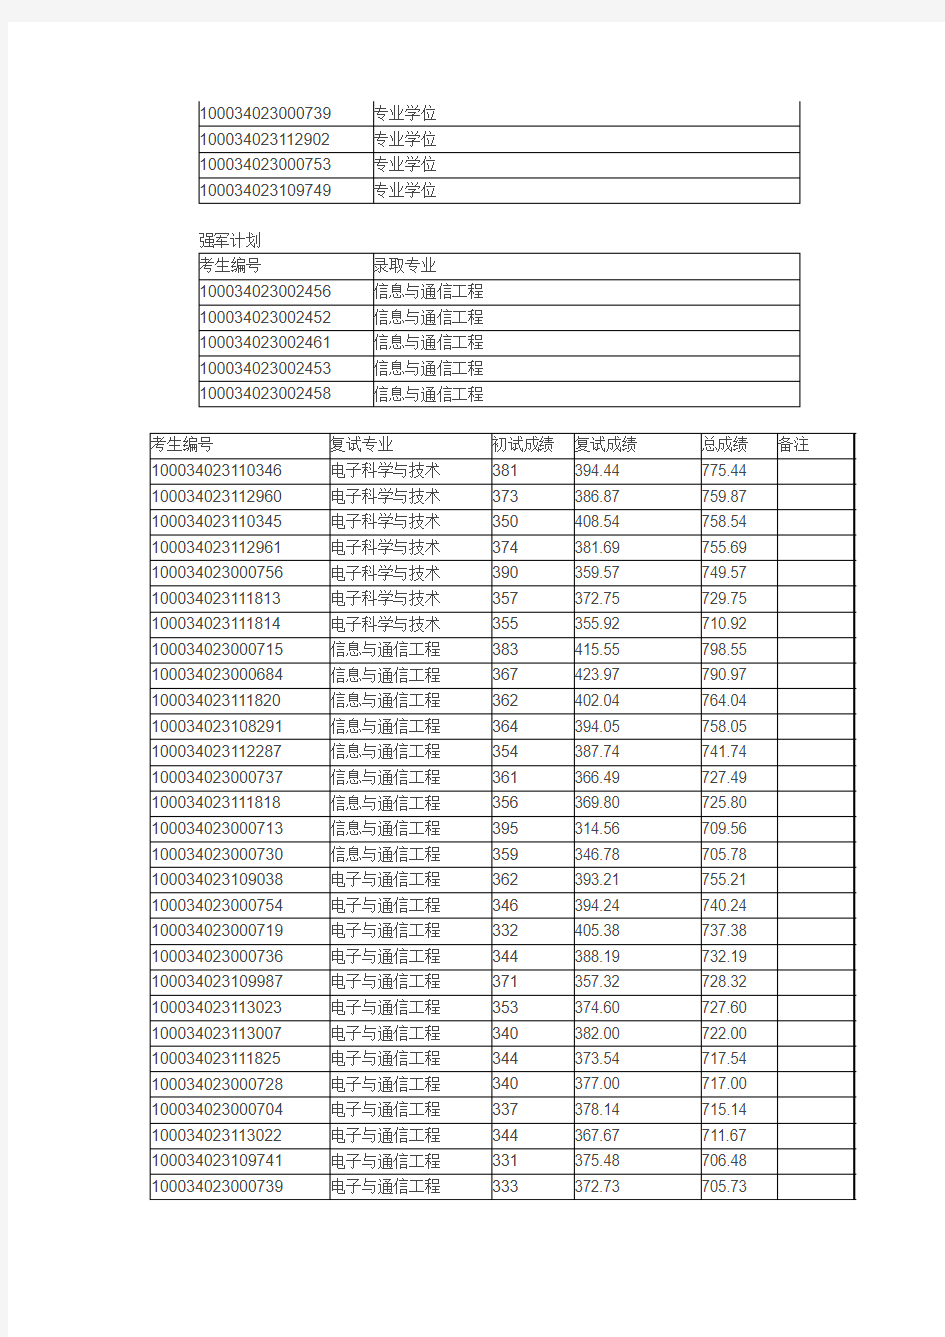 清华大学电子工程系2014年统考硕士录取名单公示